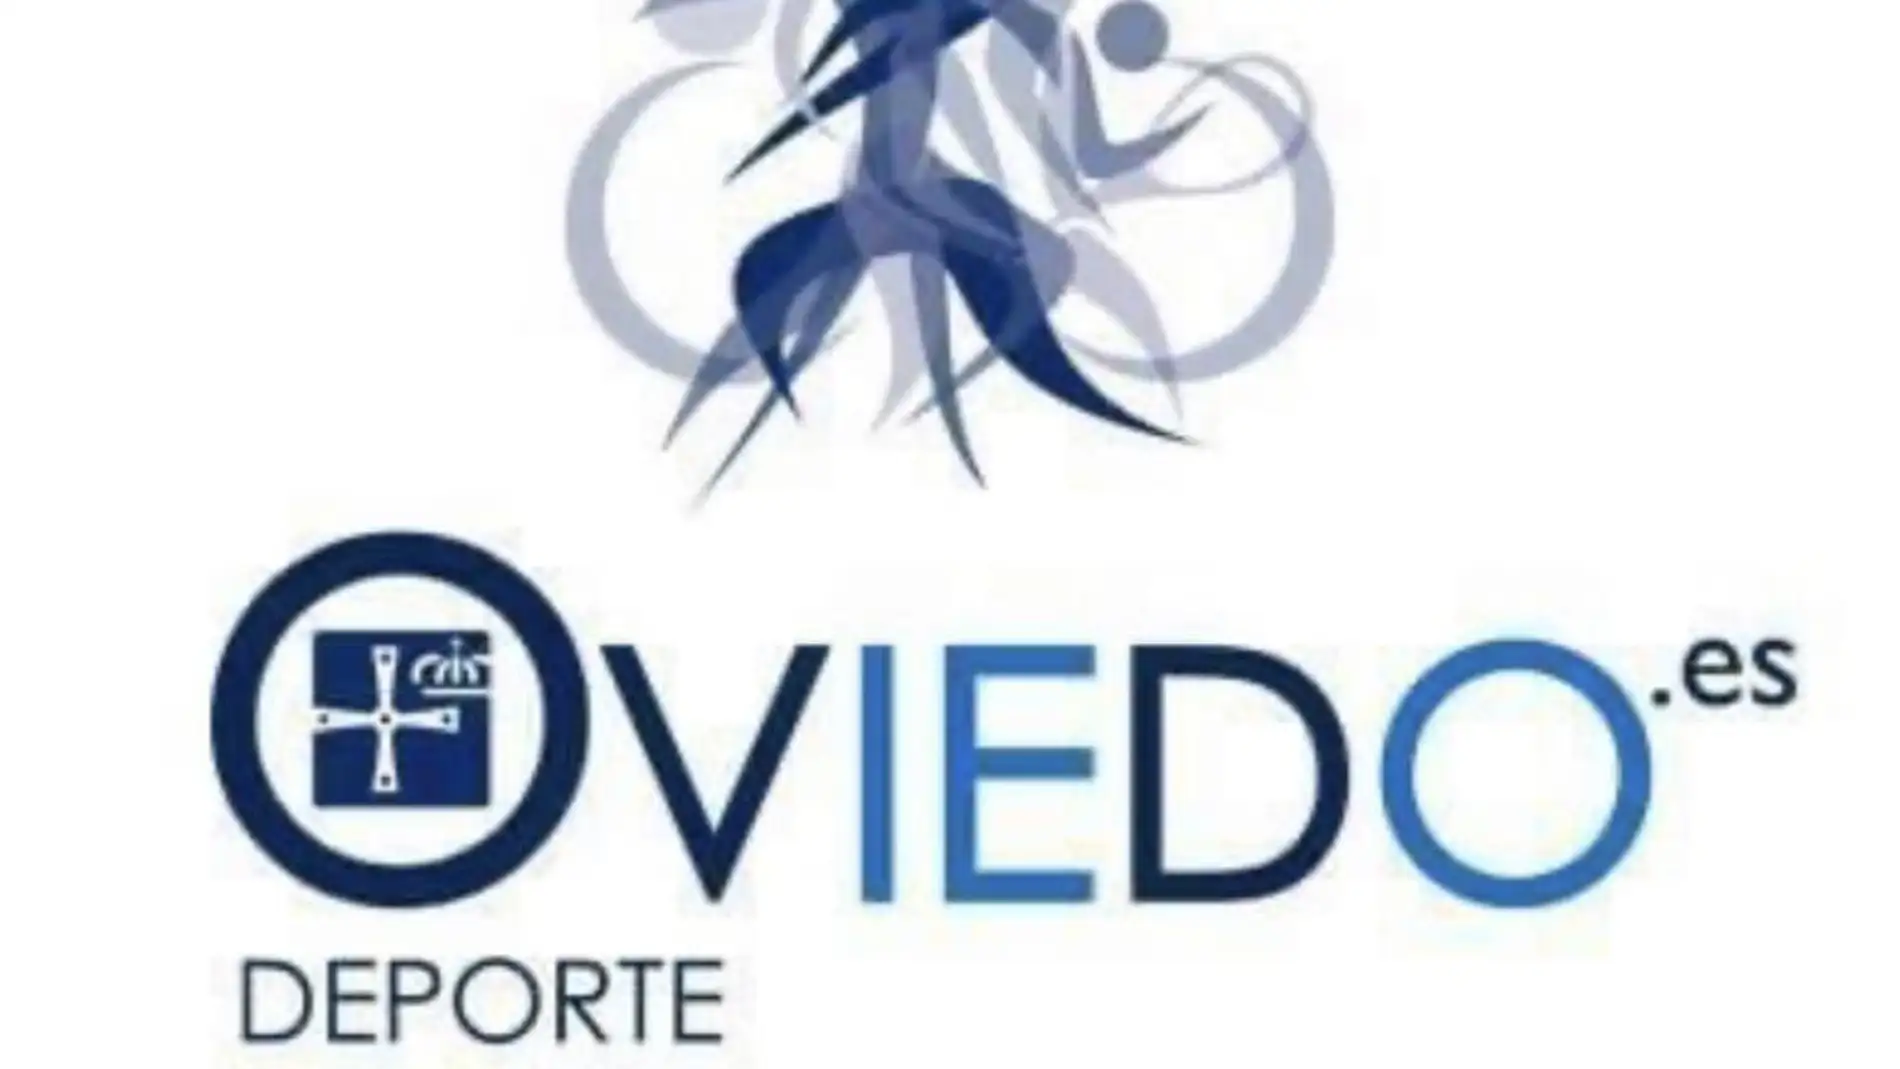 La concejalía de Deportes de Oviedo destina más de 2 millones de euros para subvencionar pruebas deportivas